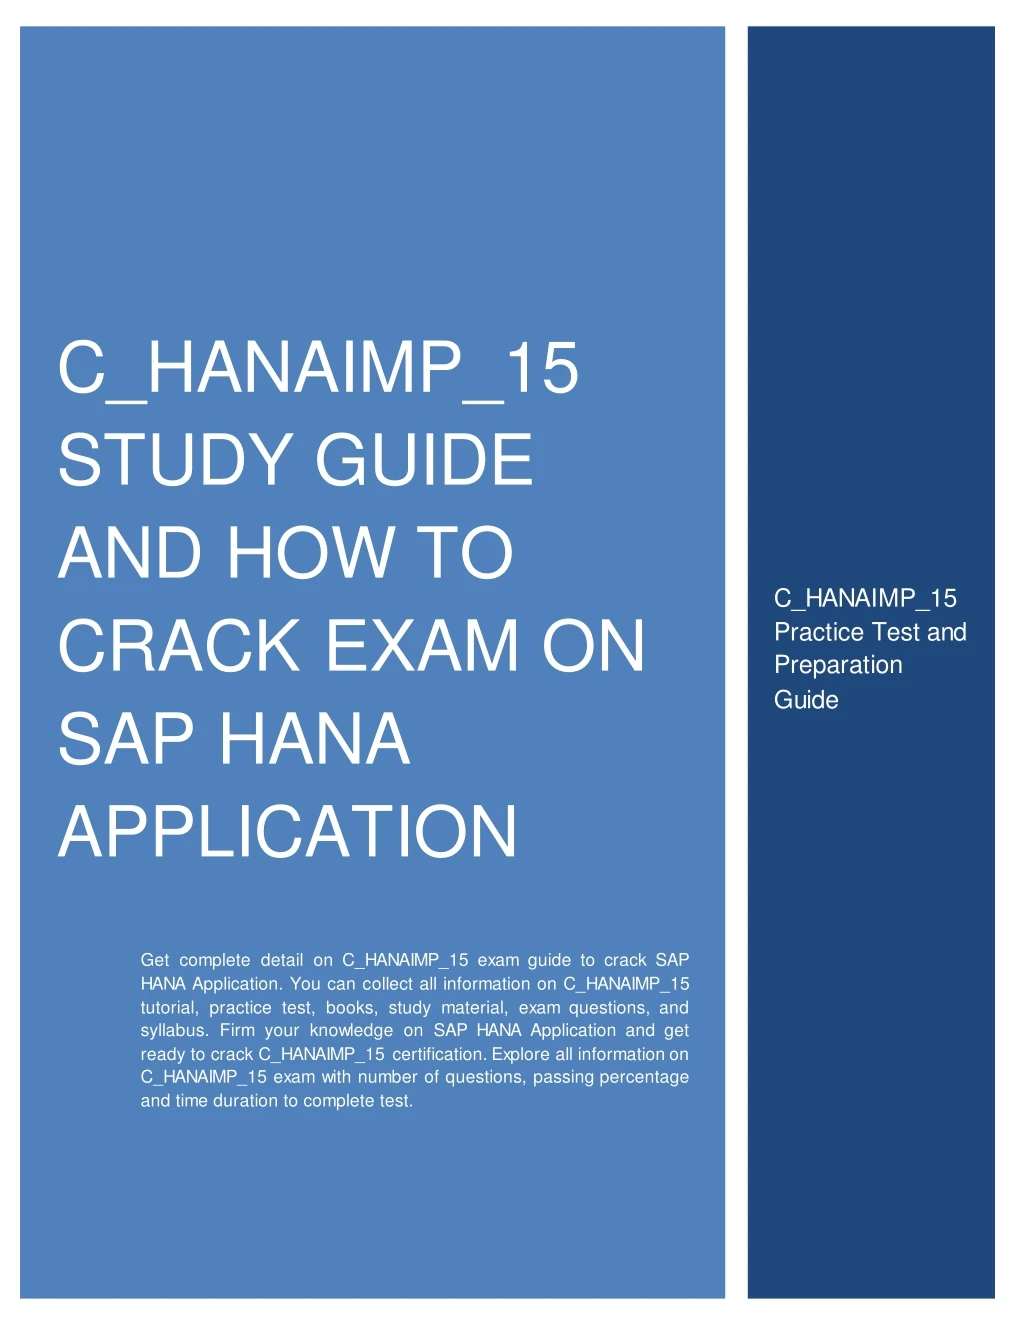 c hanaimp 15 study guide and how to crack exam